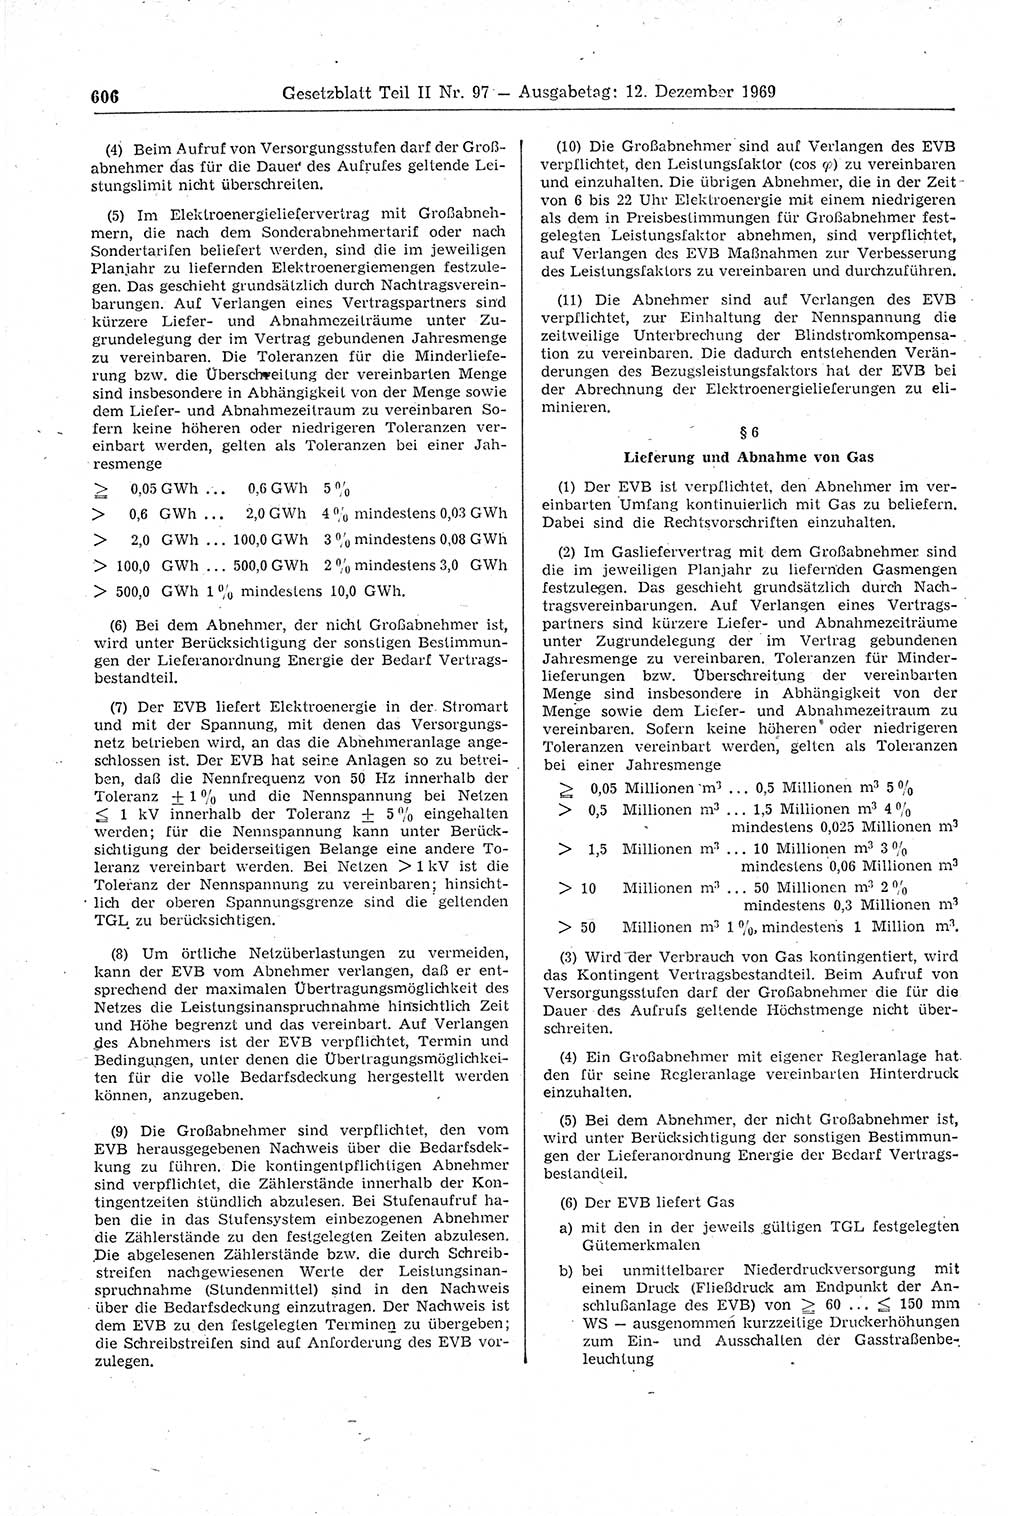 Gesetzblatt (GBl.) der Deutschen Demokratischen Republik (DDR) Teil ⅠⅠ 1969, Seite 606 (GBl. DDR ⅠⅠ 1969, S. 606)